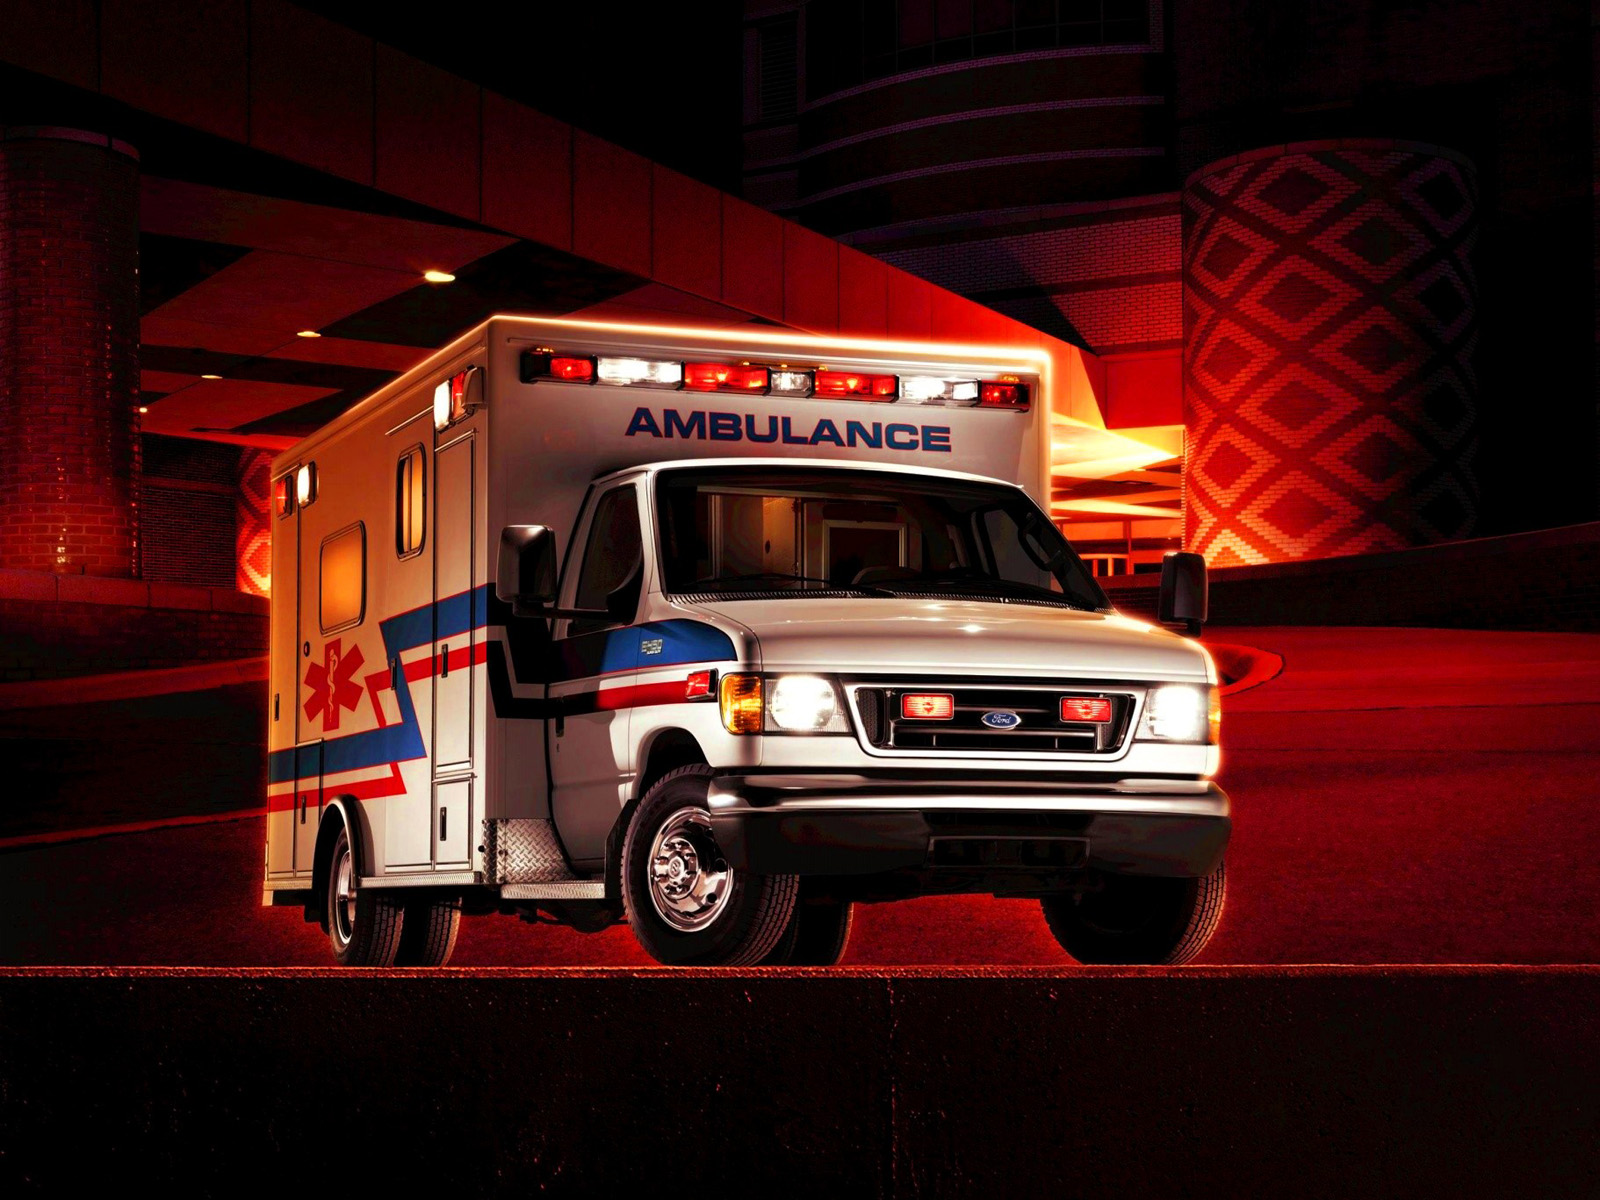 papier peint ambulance,véhicule,voiture,urgence,service d'urgence,ambulance